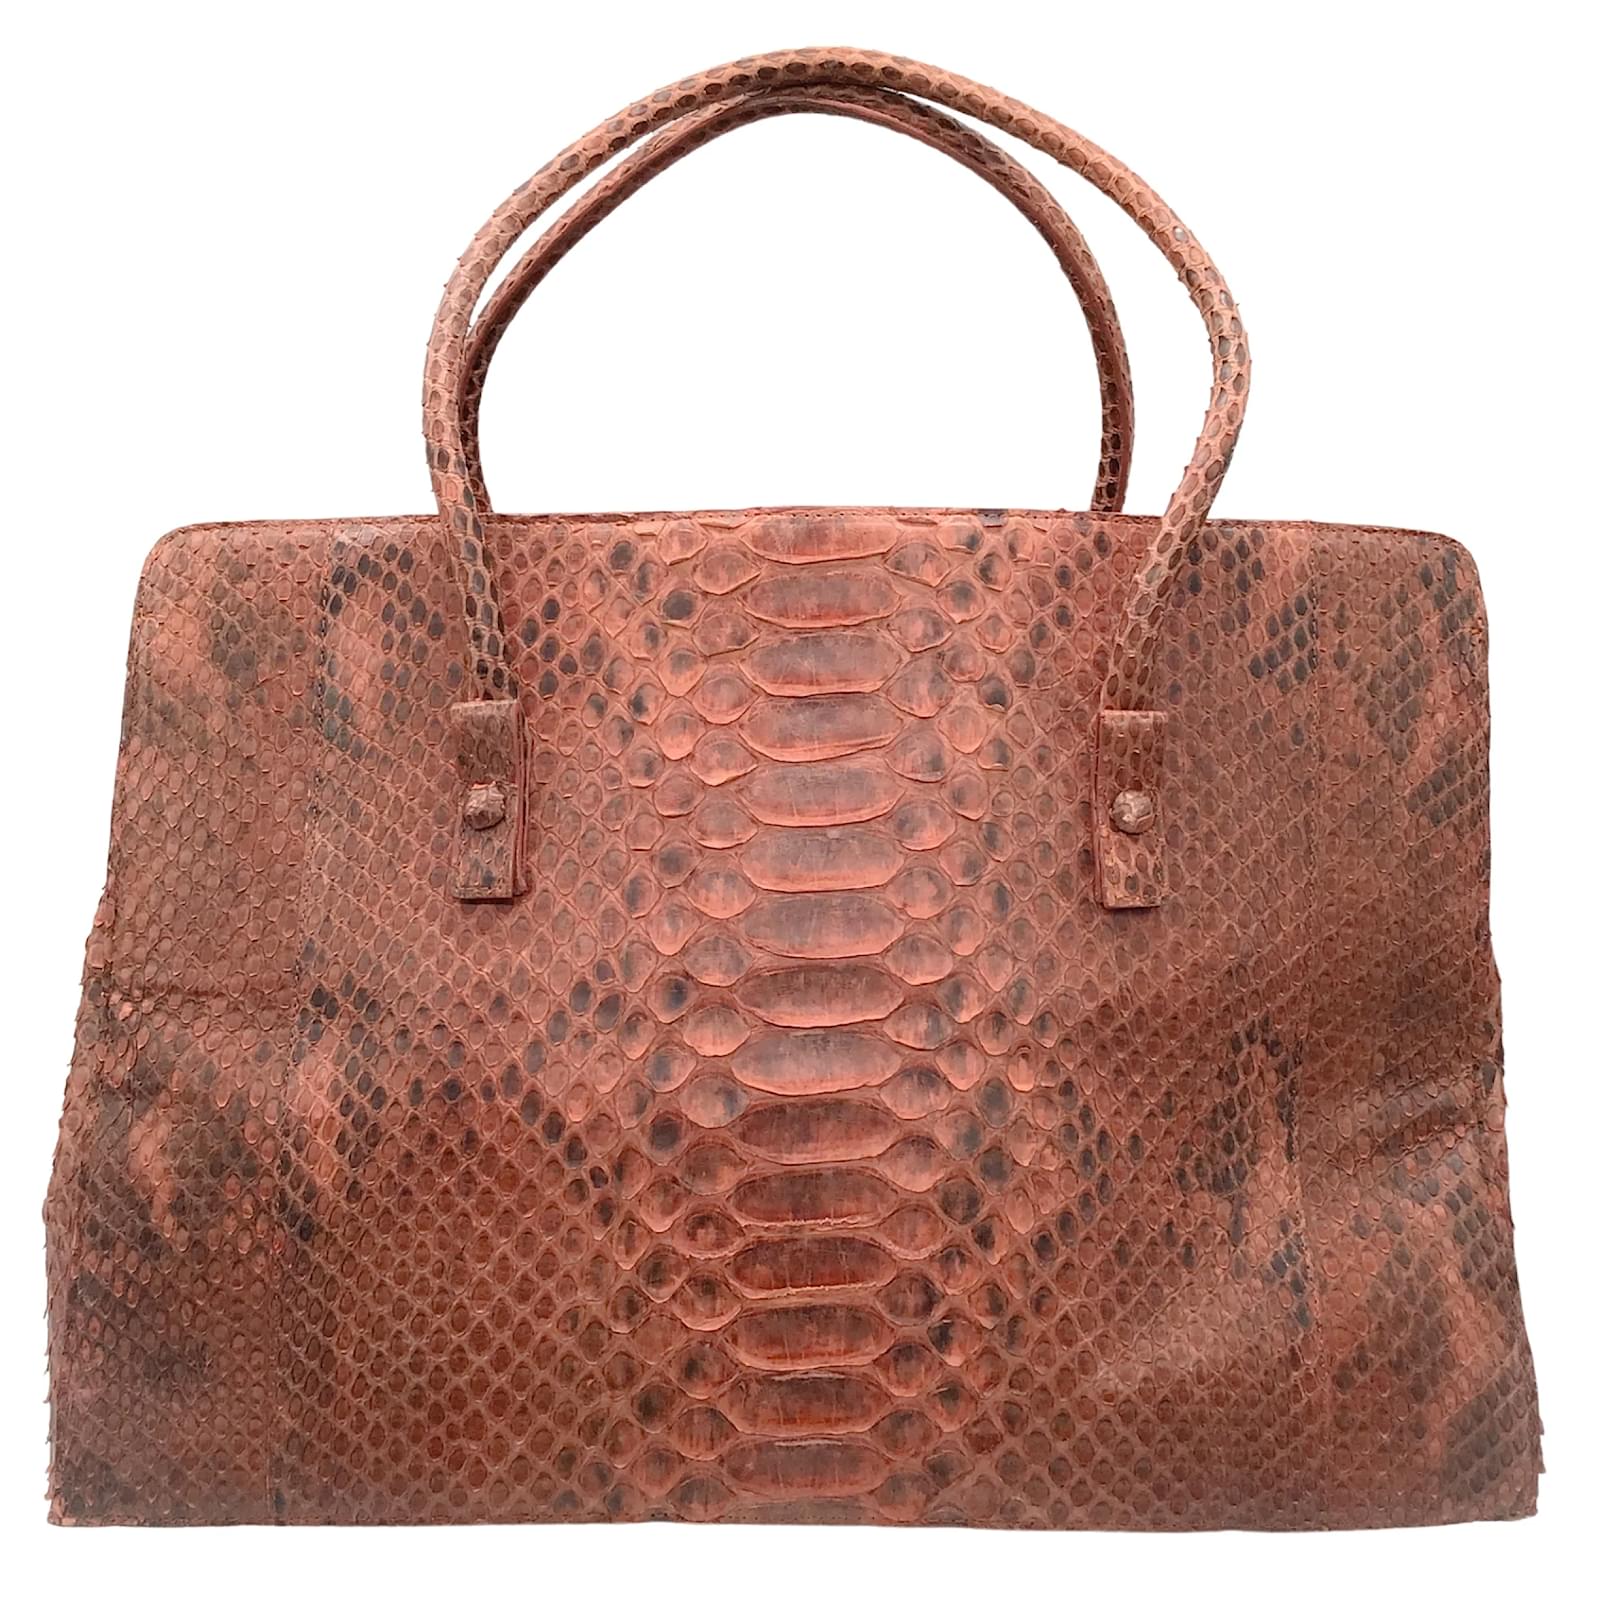 Bronze Bag Python Bag Snakeskin Bag Genuine Leather Bag 